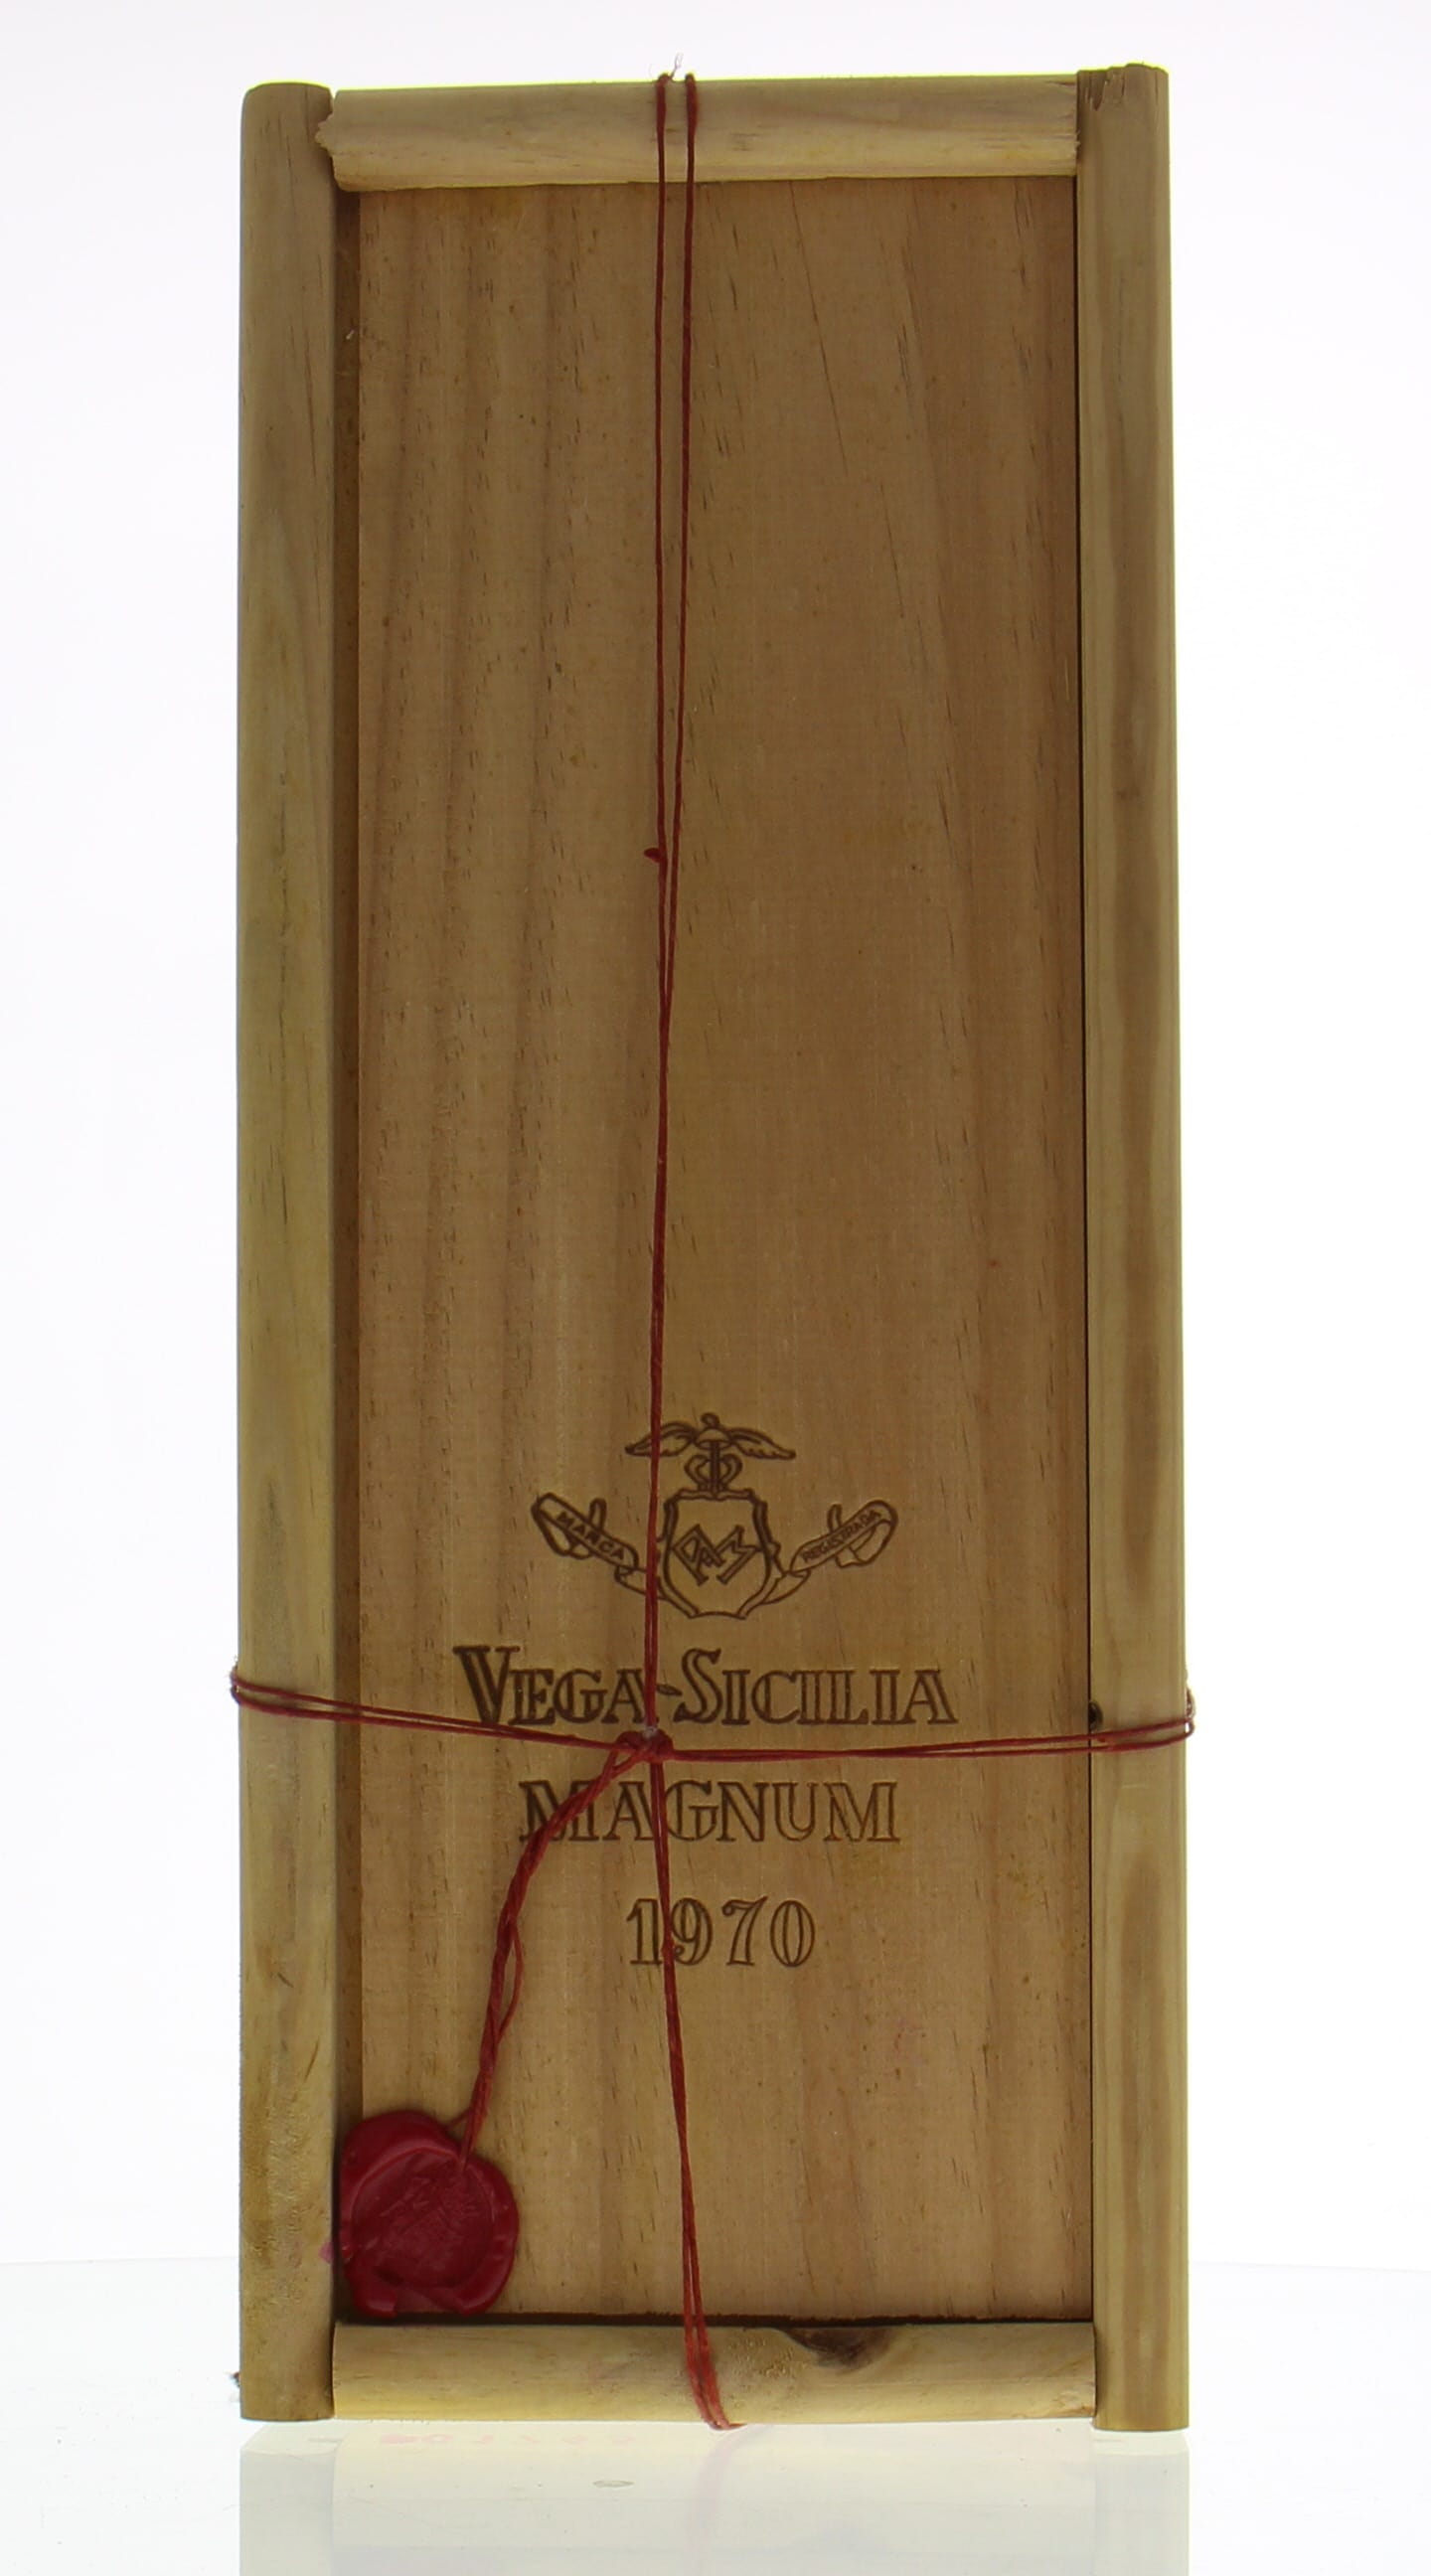 Vega Sicilia - Unico 1970